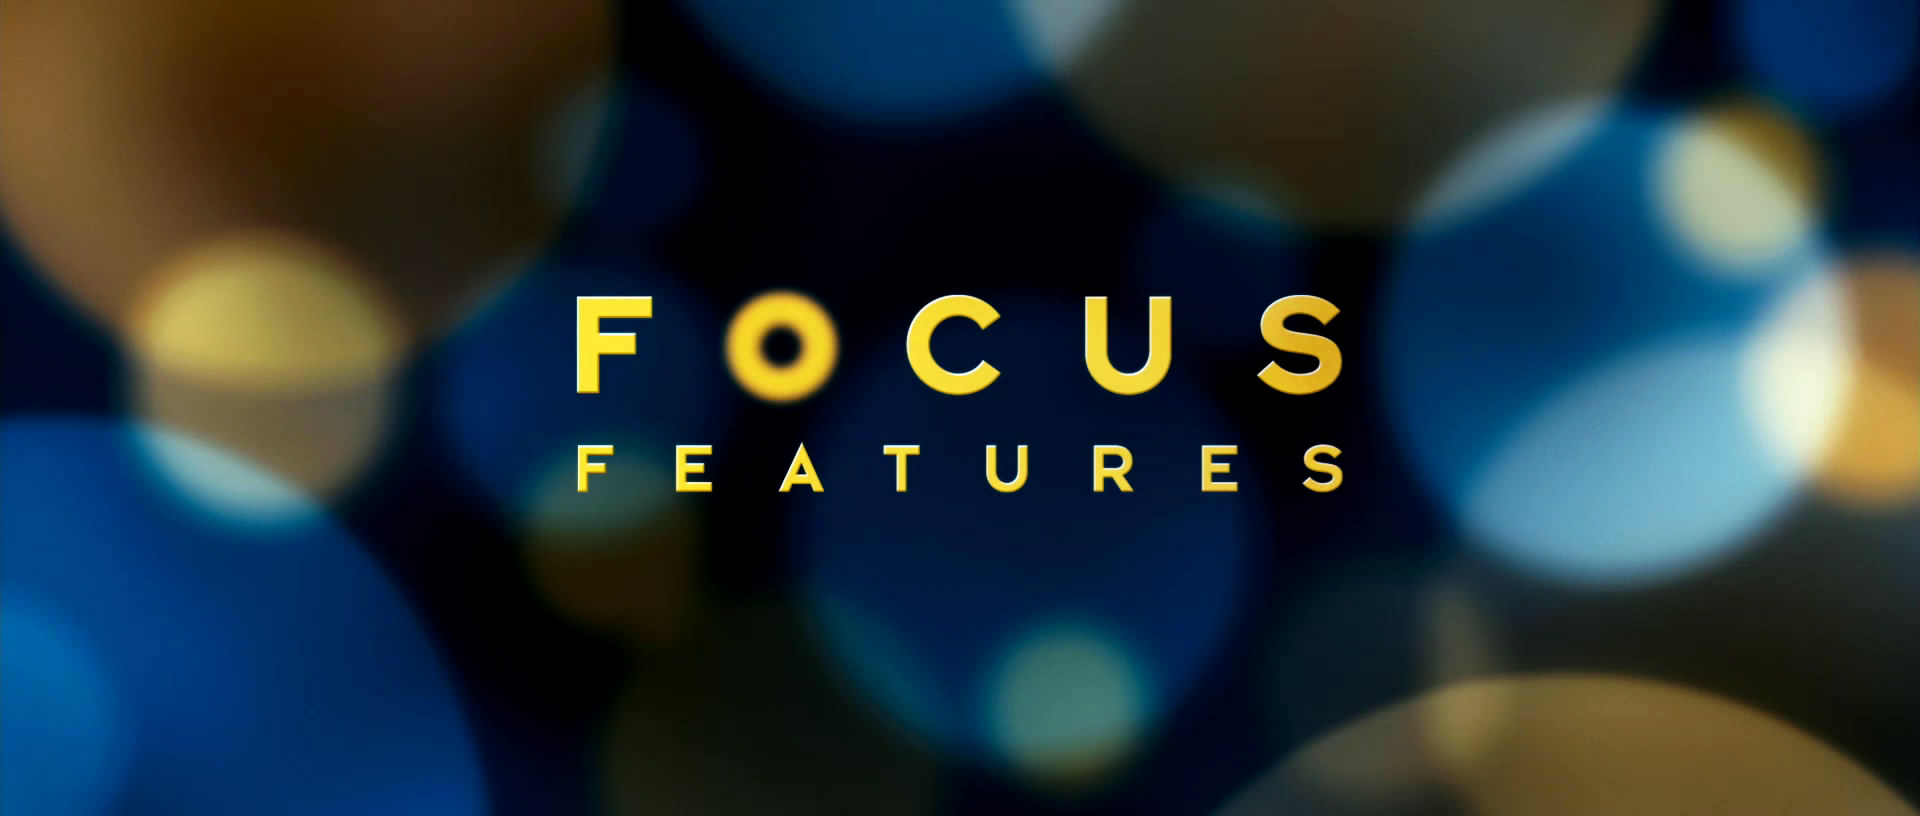 焦點電影公司(focus features)